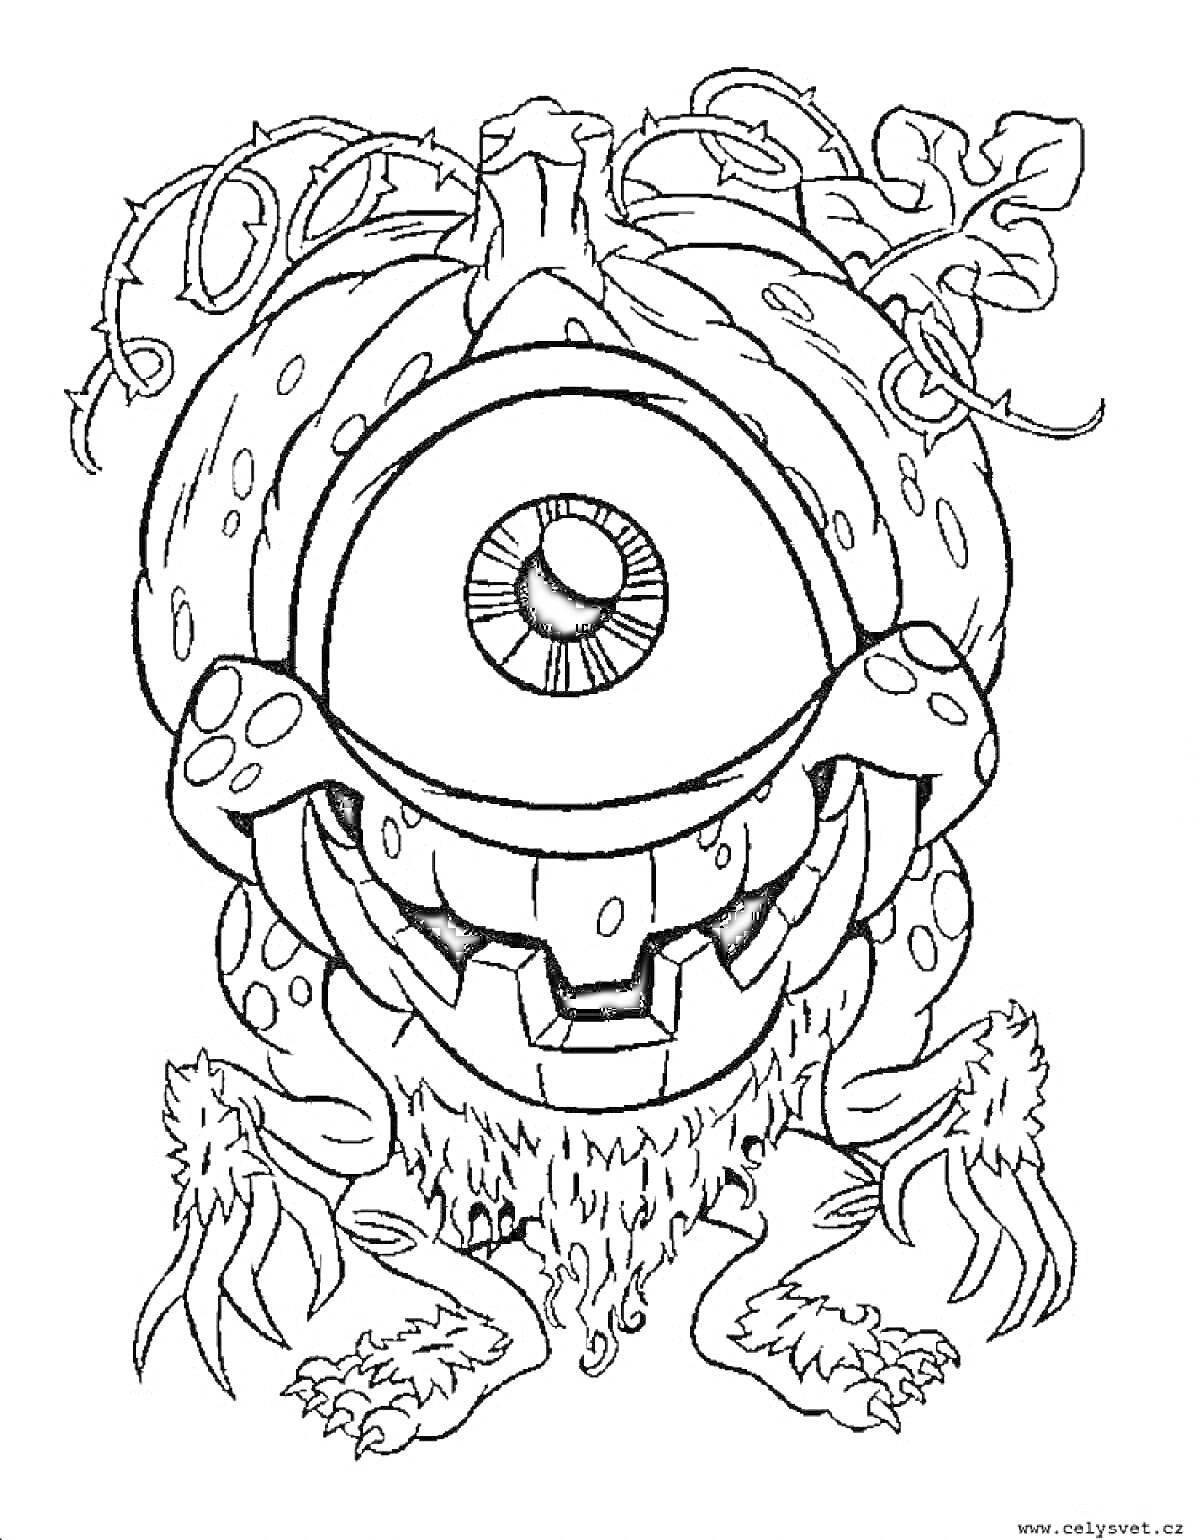 Раскраска Одноглазый монстр с головой в форме тыквы и лианами, волосатый, с лапами вместо ног